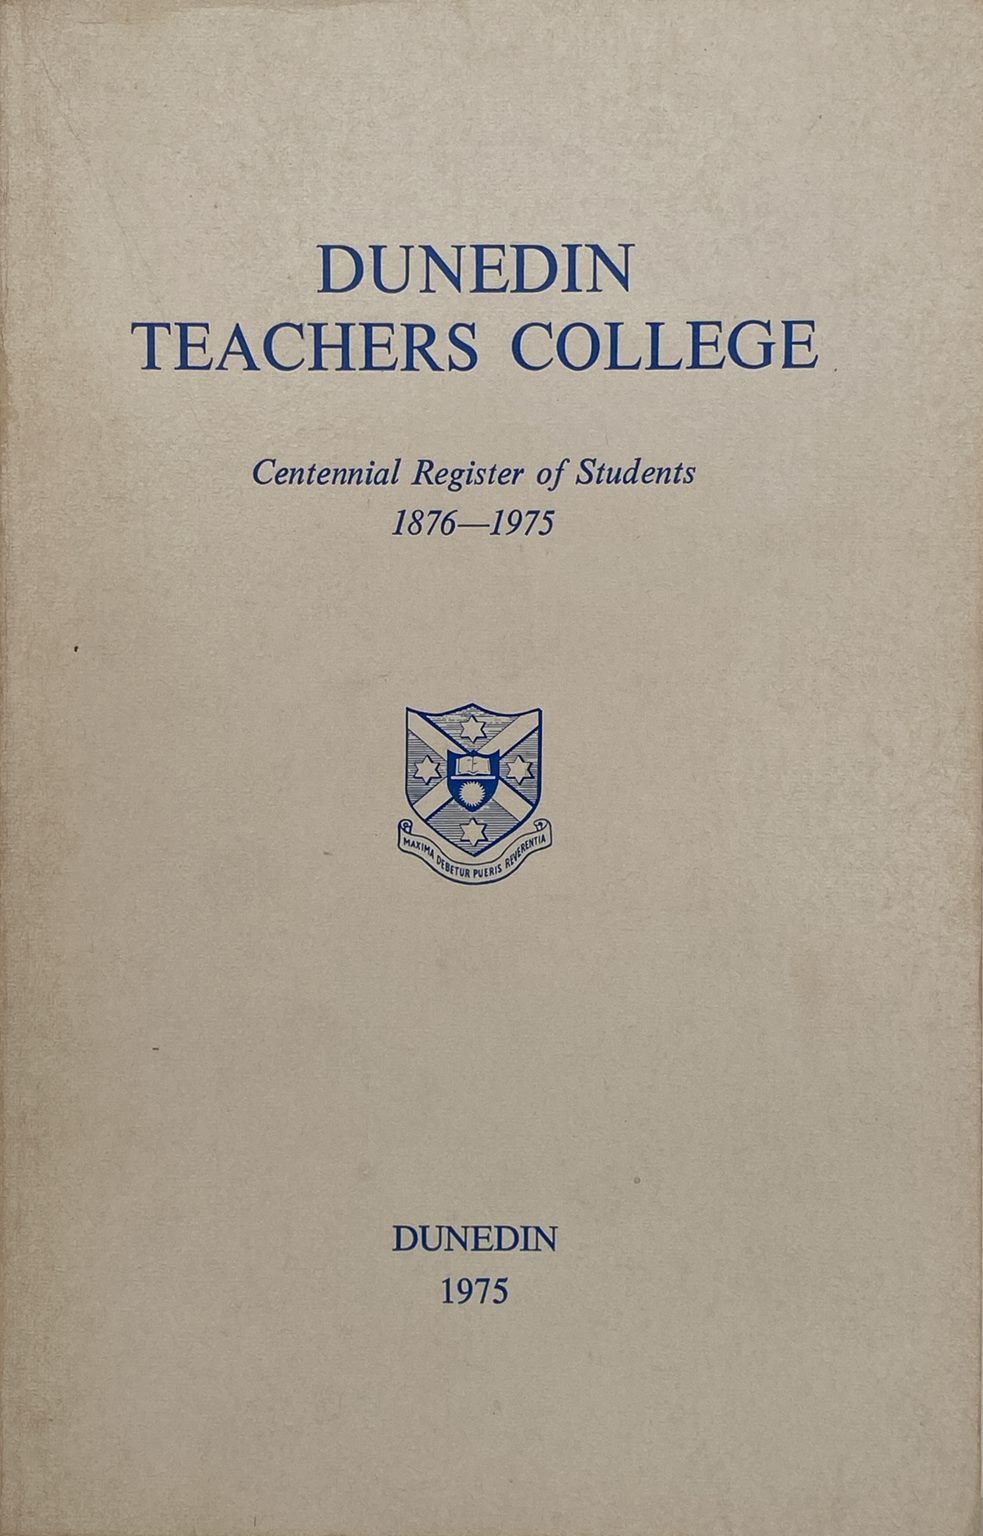 DUNEDIN TEACHERS COLLEGE: Centennial Register of Students 1876 - 1975